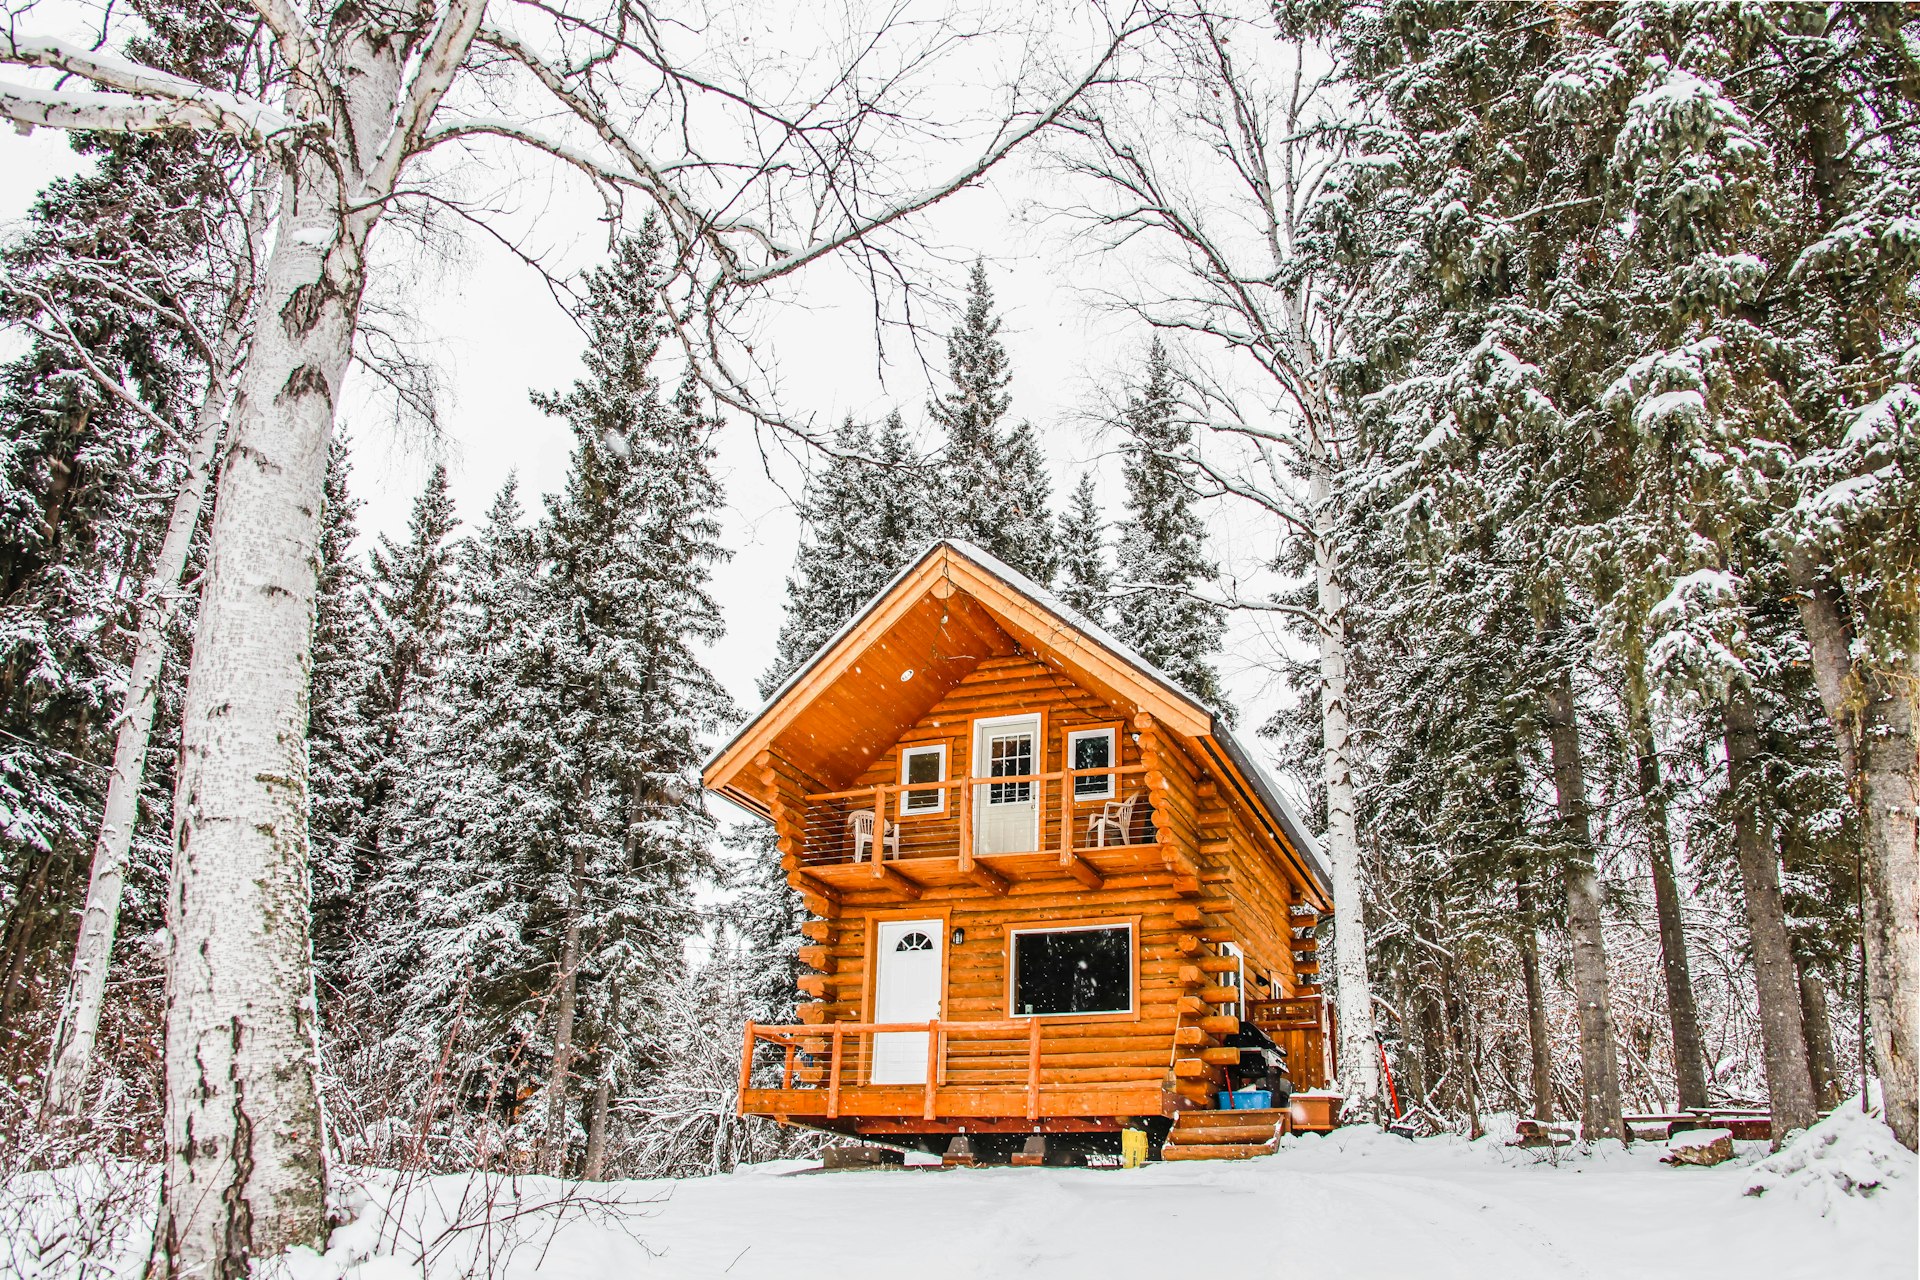 An Alaskan log cabin in the snow